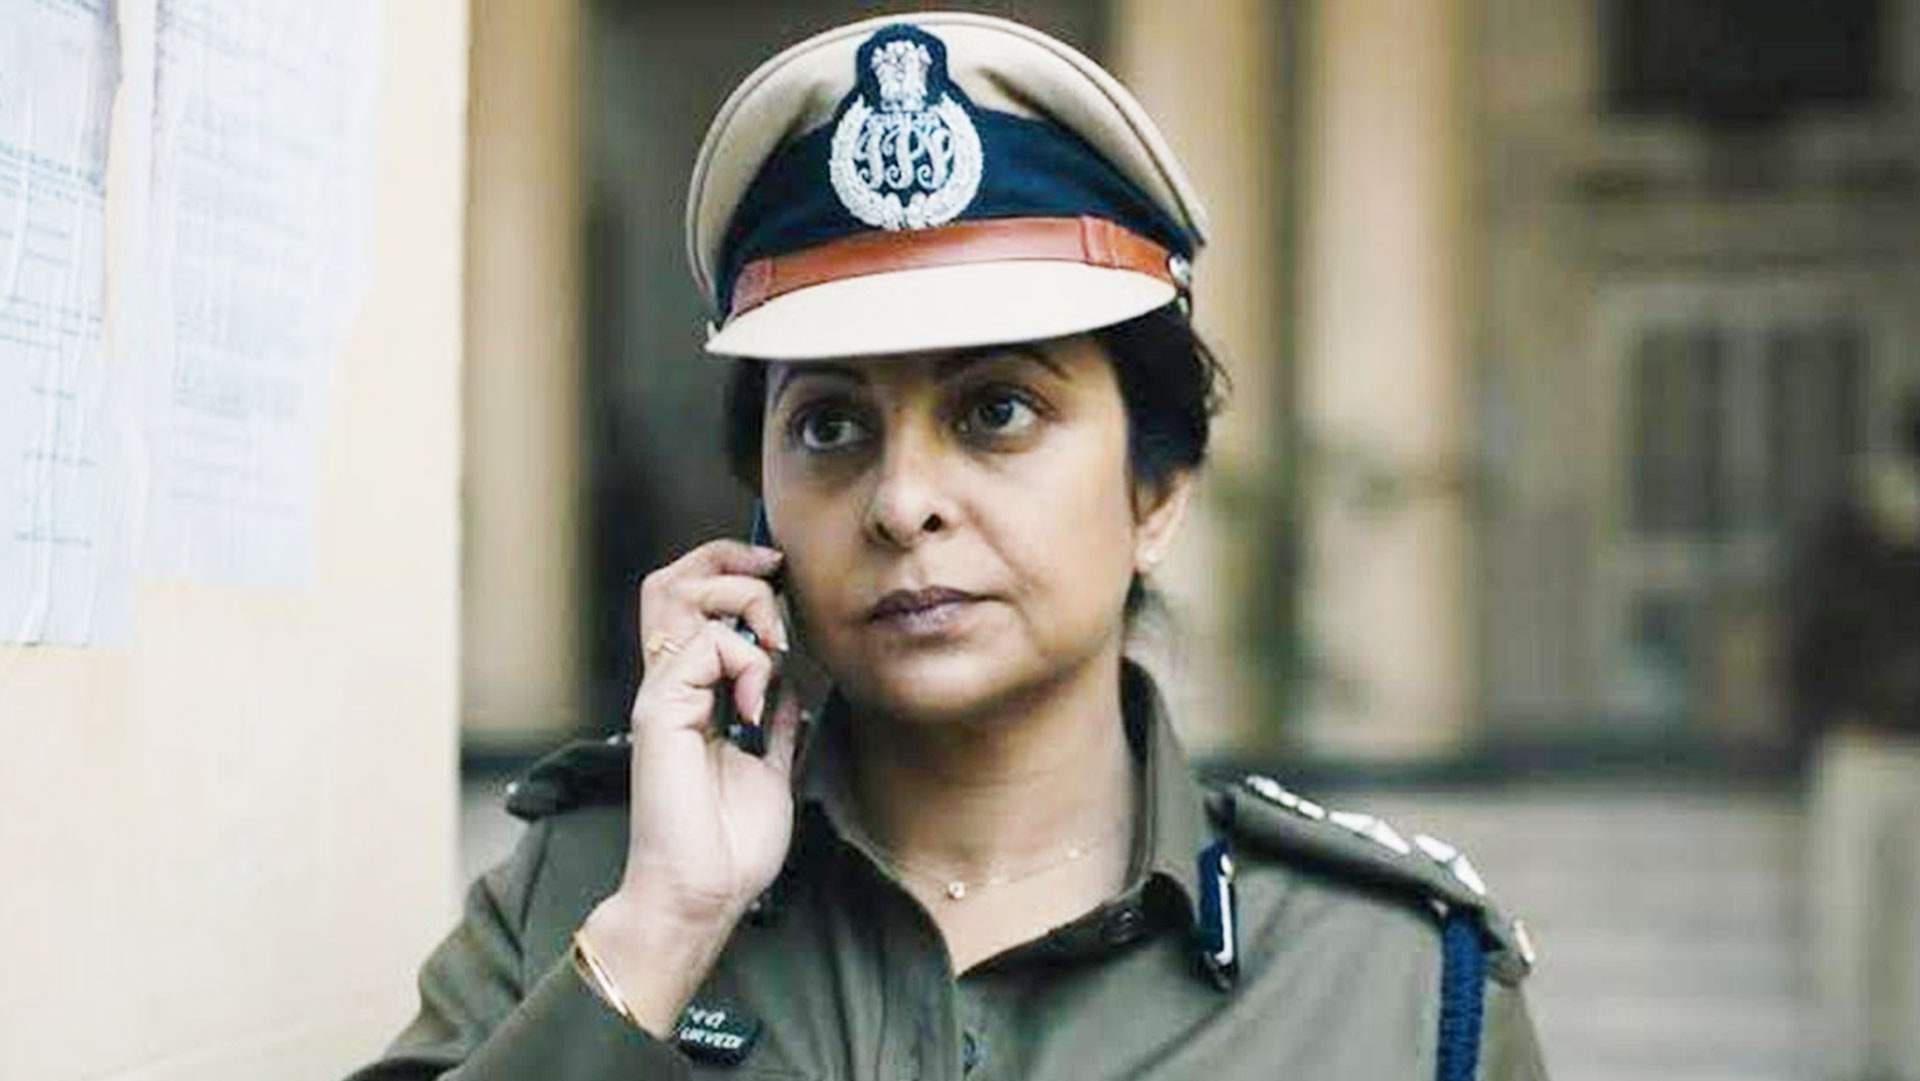 Shefali Shah police uniform